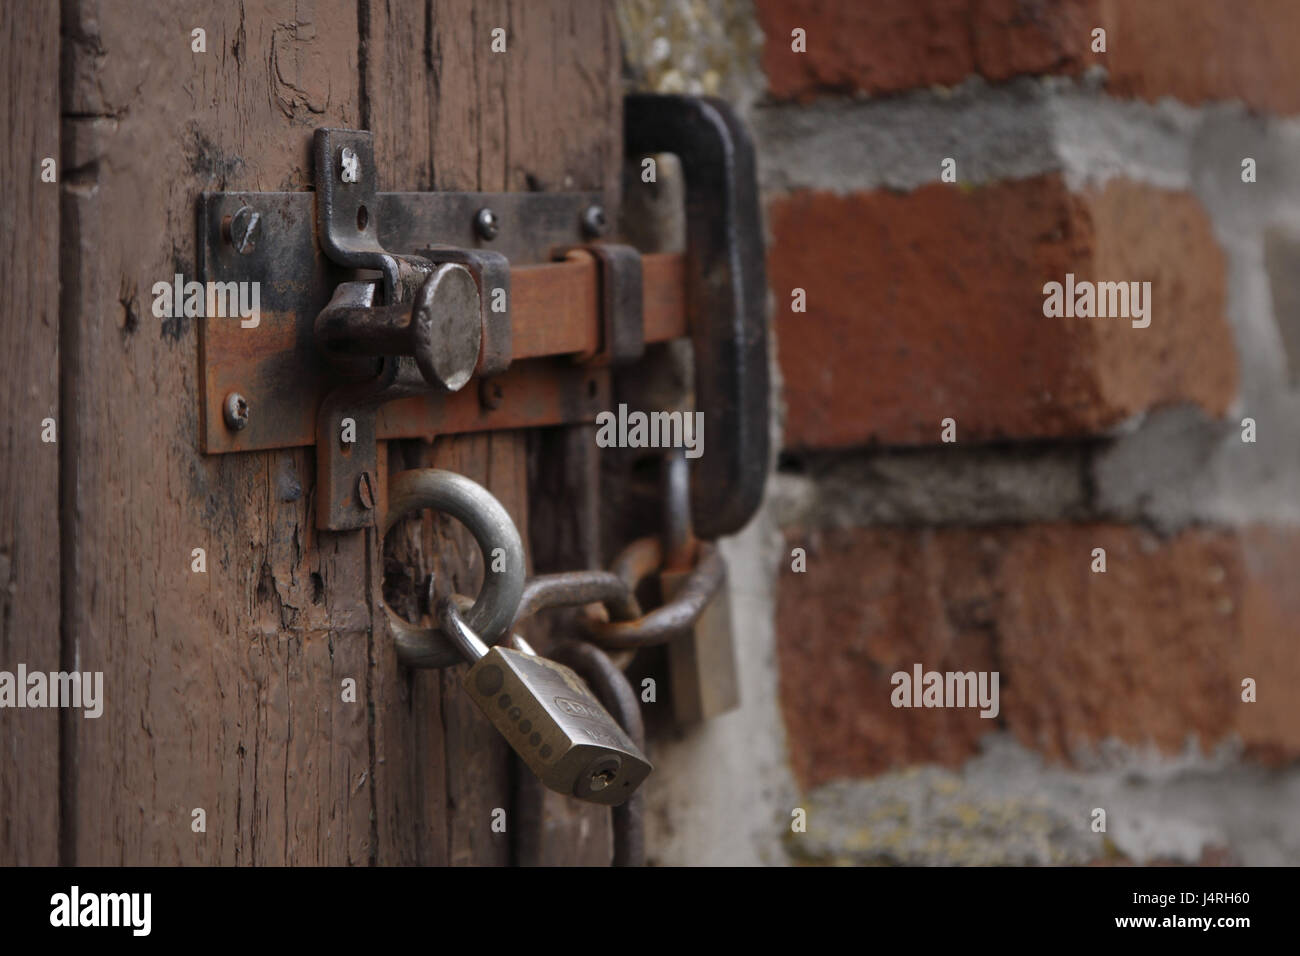 Tür schloss, Tür, Riegel, Mauerwerk, Lehmziegel, alte Stockfotografie -  Alamy